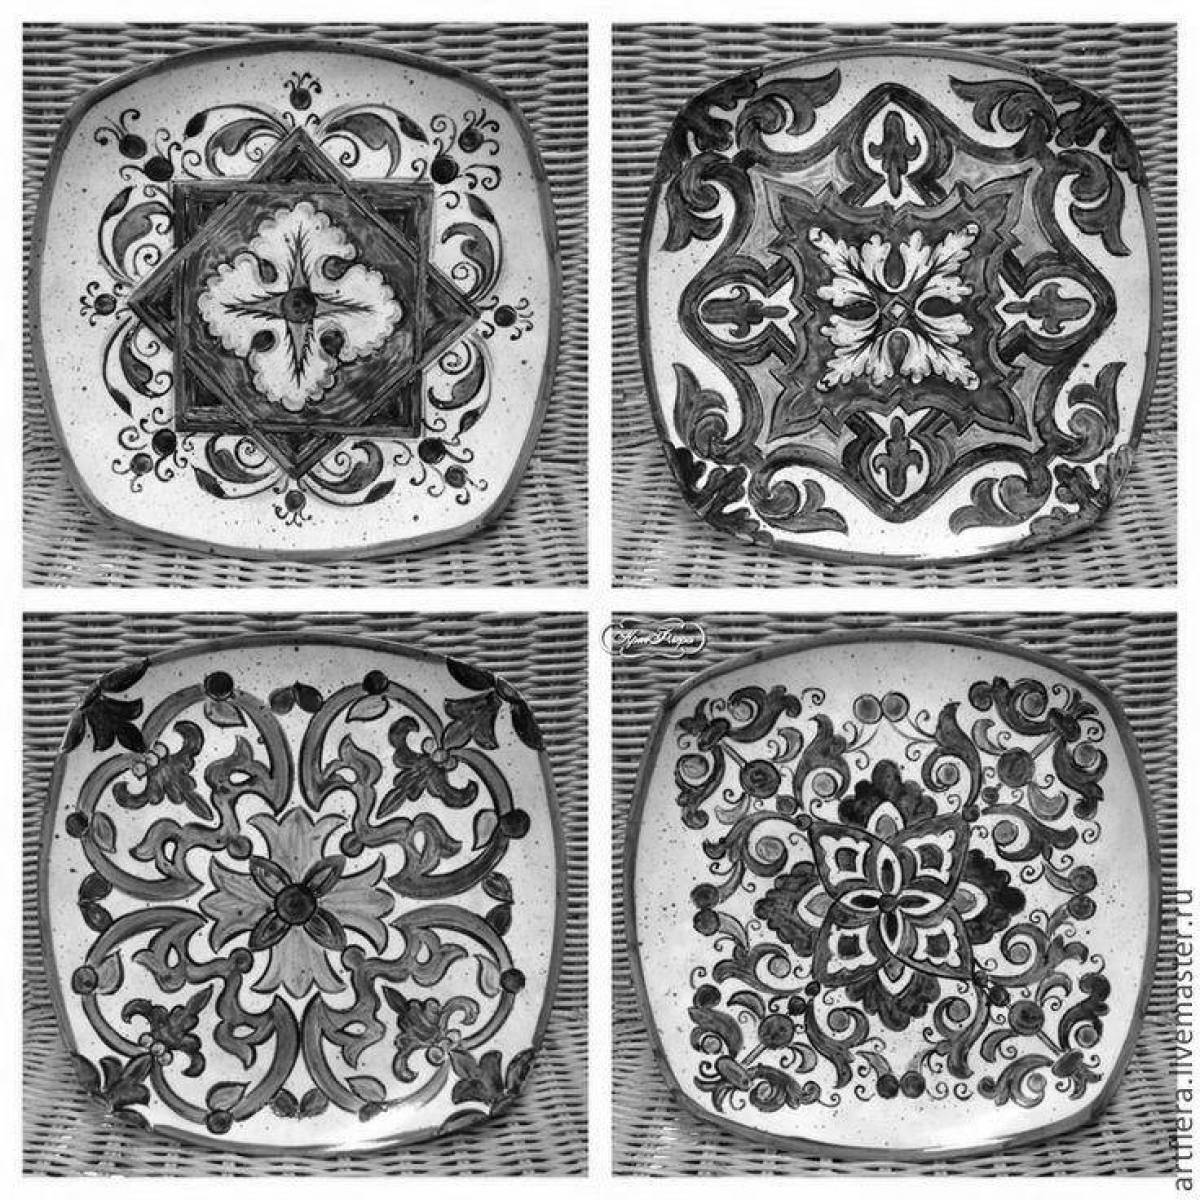 Elegant handmade ceramic tiles